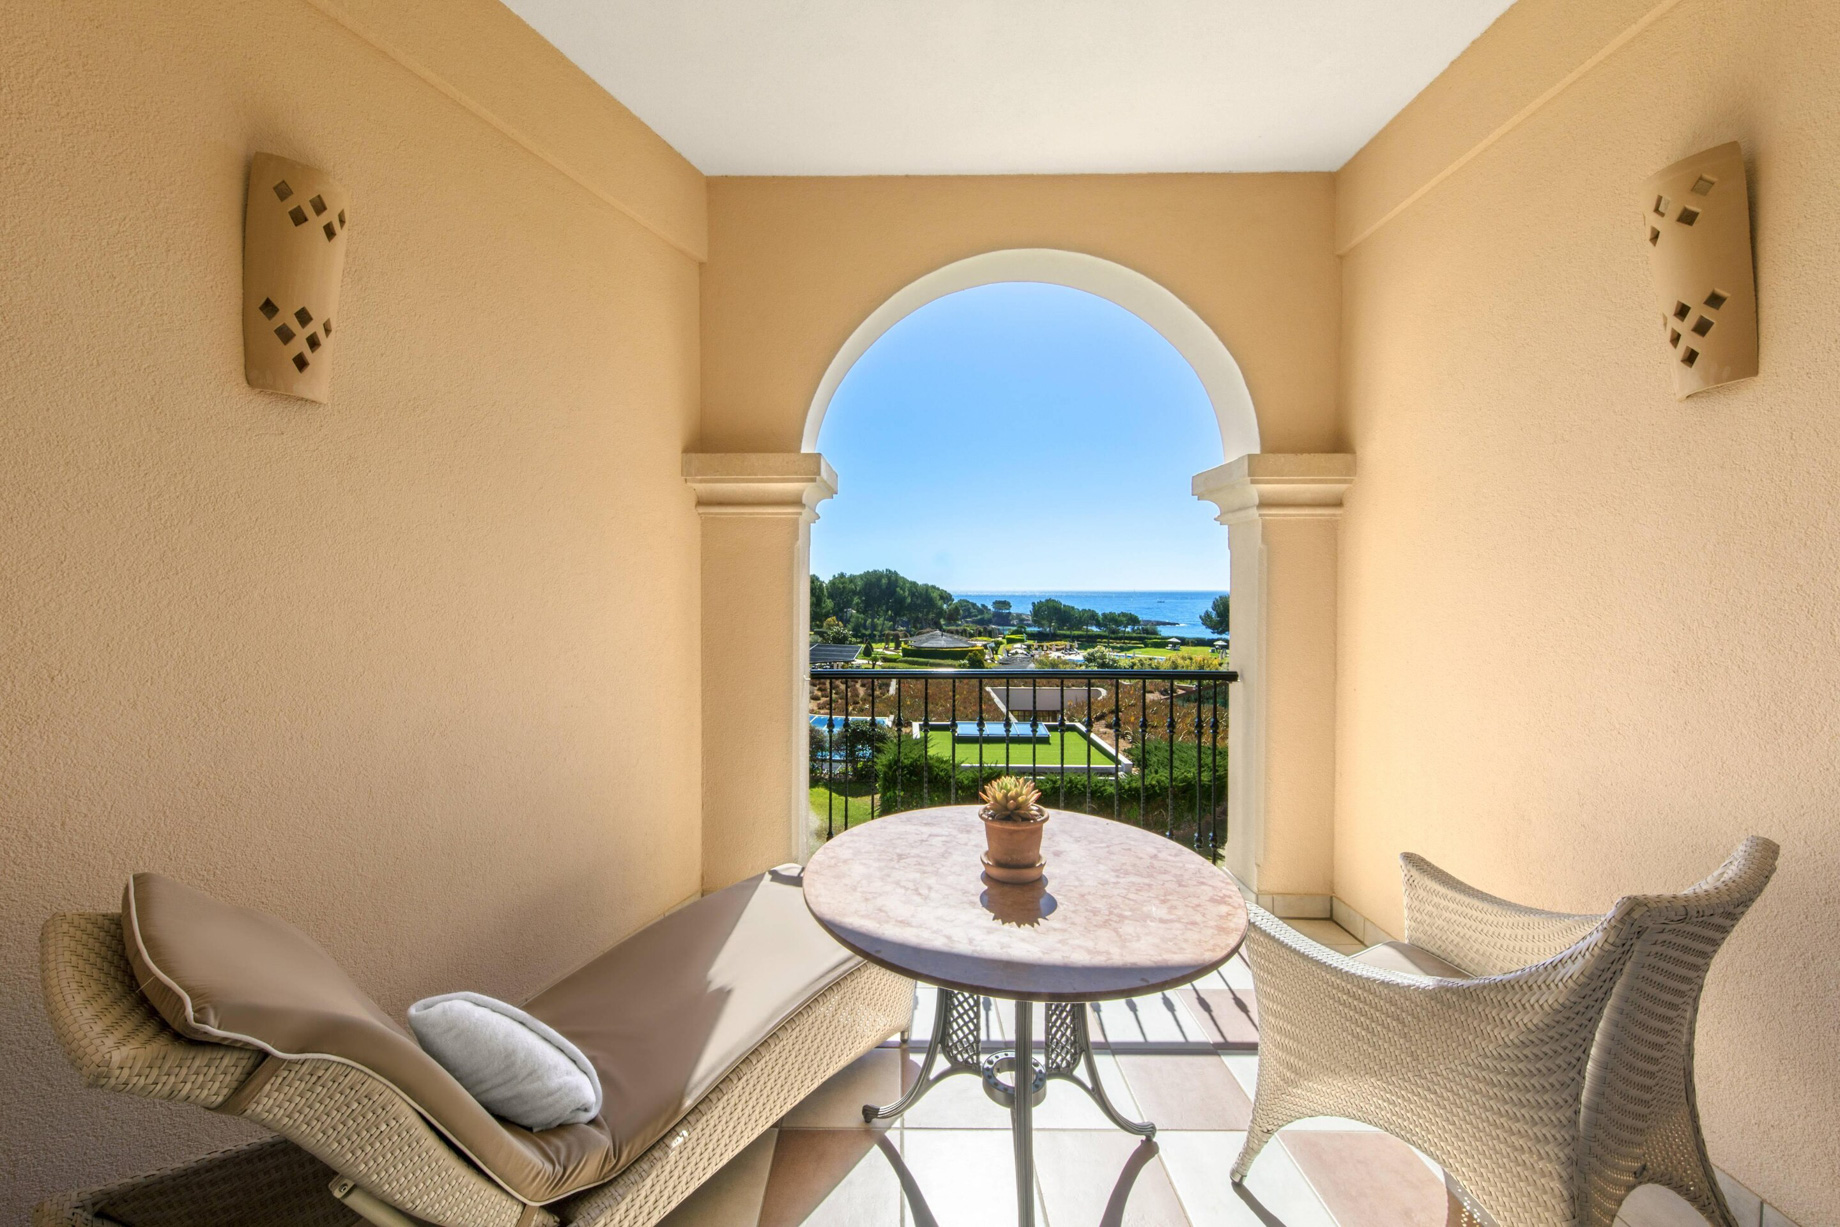 The St. Regis Mardavall Mallorca Resort – Palma de Mallorca, Spain – Grand Deluxe Sea View Terrace